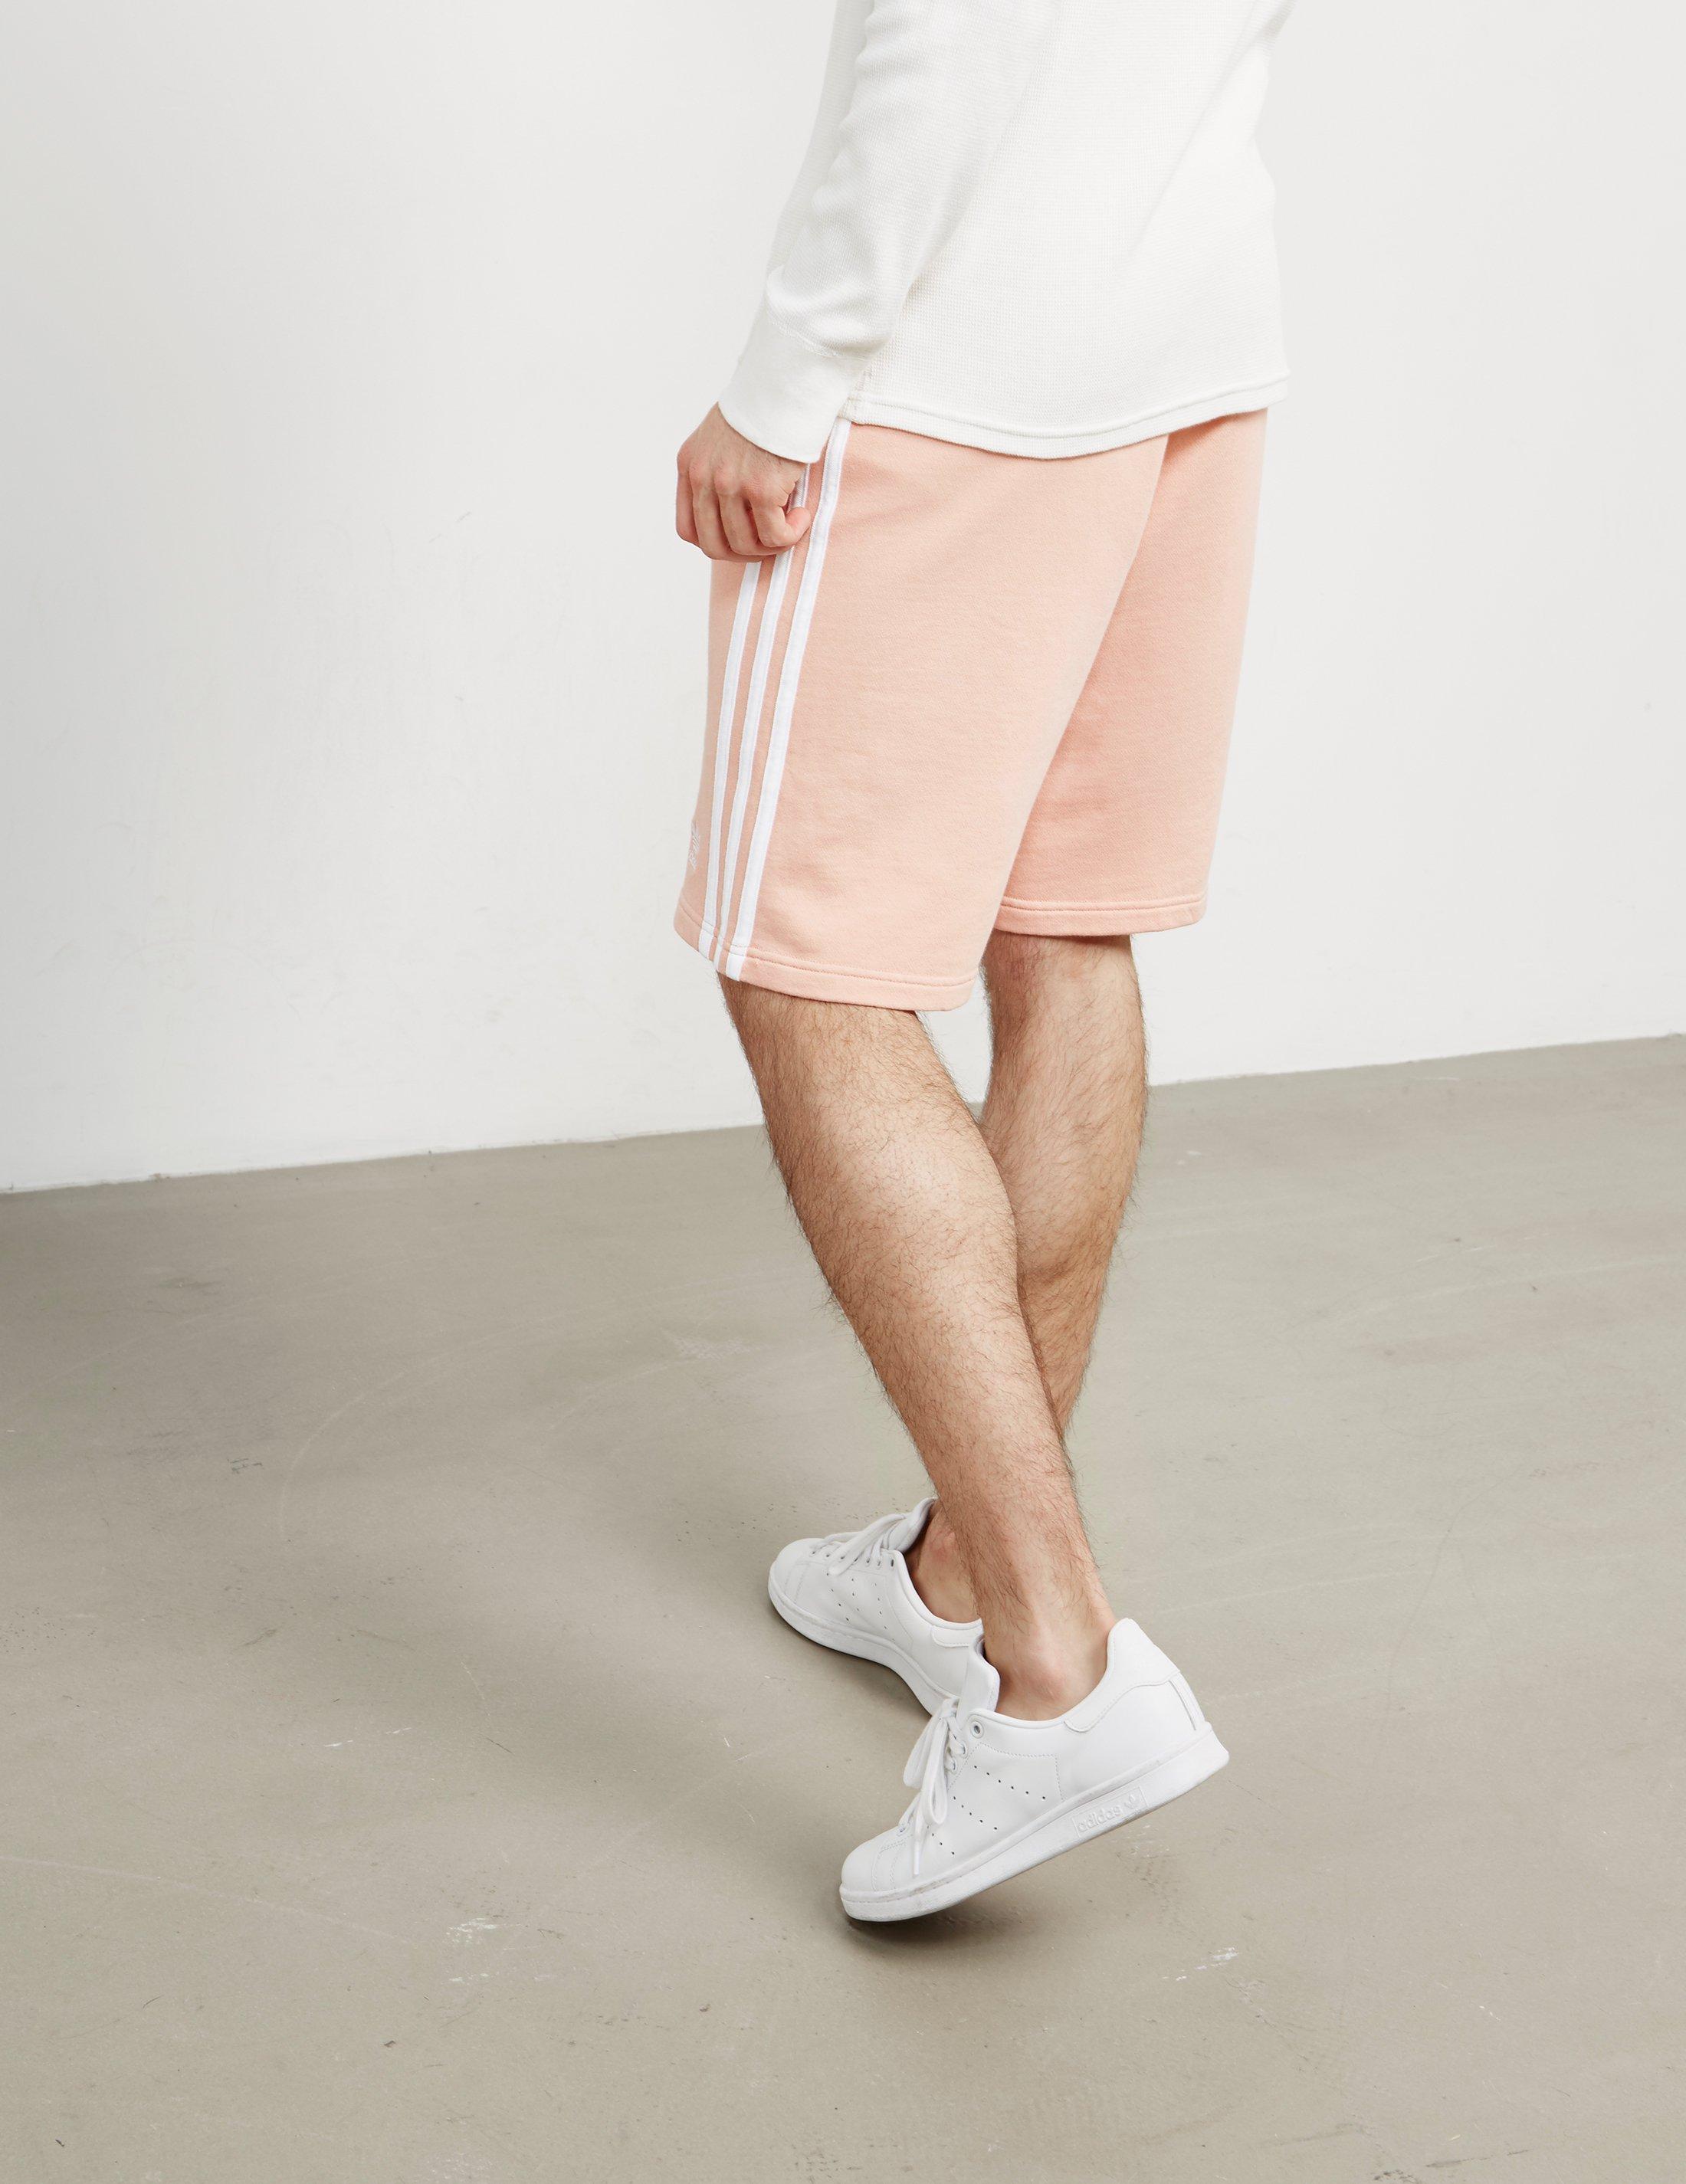 adidas pink shorts mens